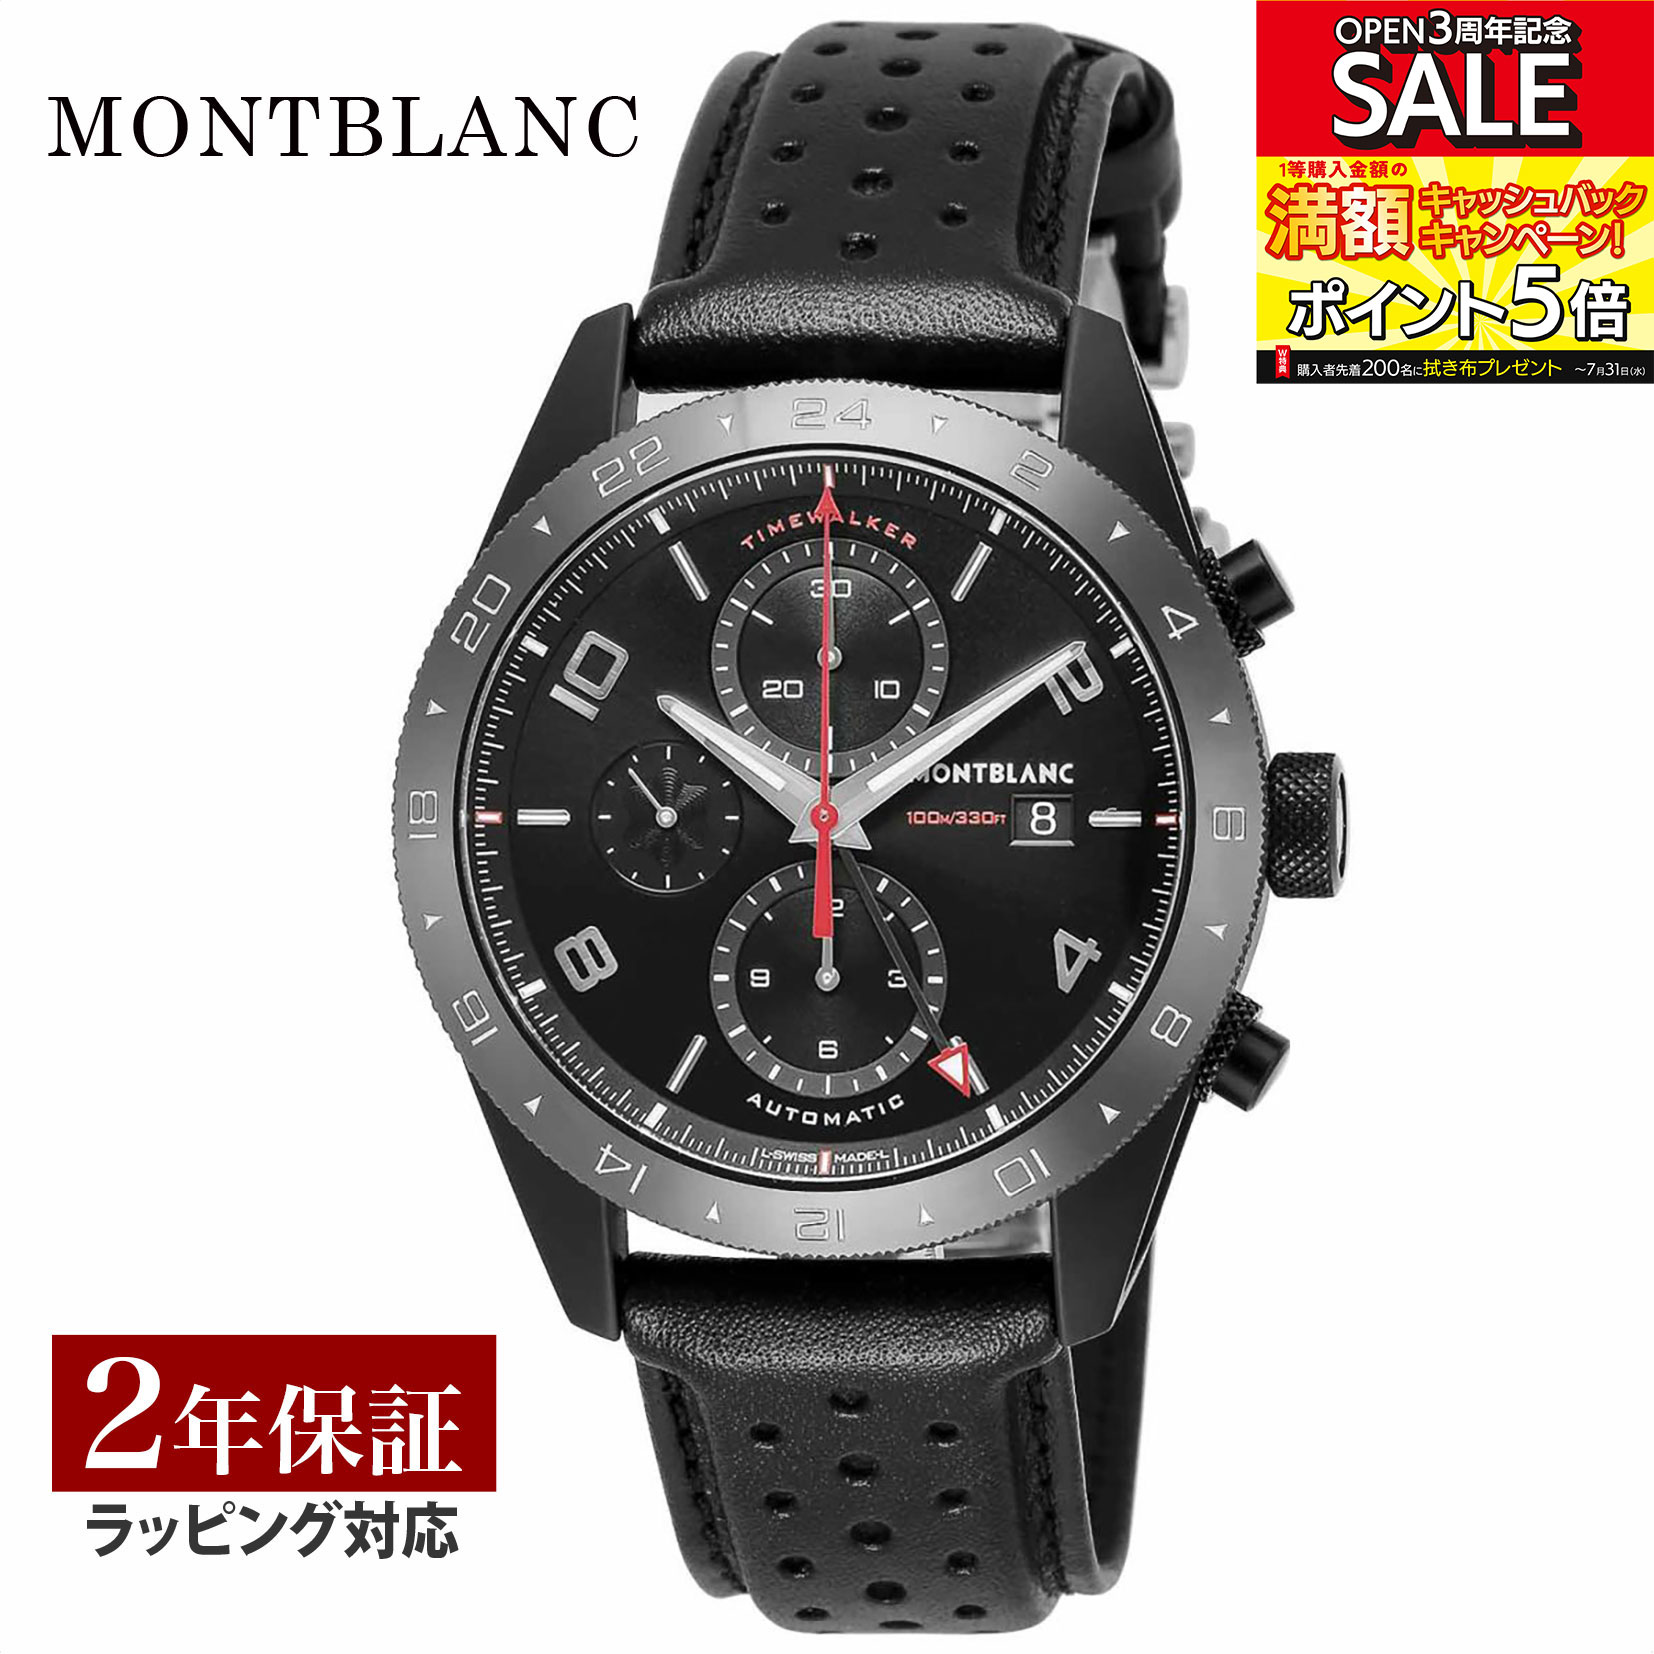 モンブラン Montblanc メンズ 時計 TIME WALKER タイムウォーカー 自動巻 ブラック 116102 時計 腕時計 高級腕時計 ブランド 【ローン金利無料】